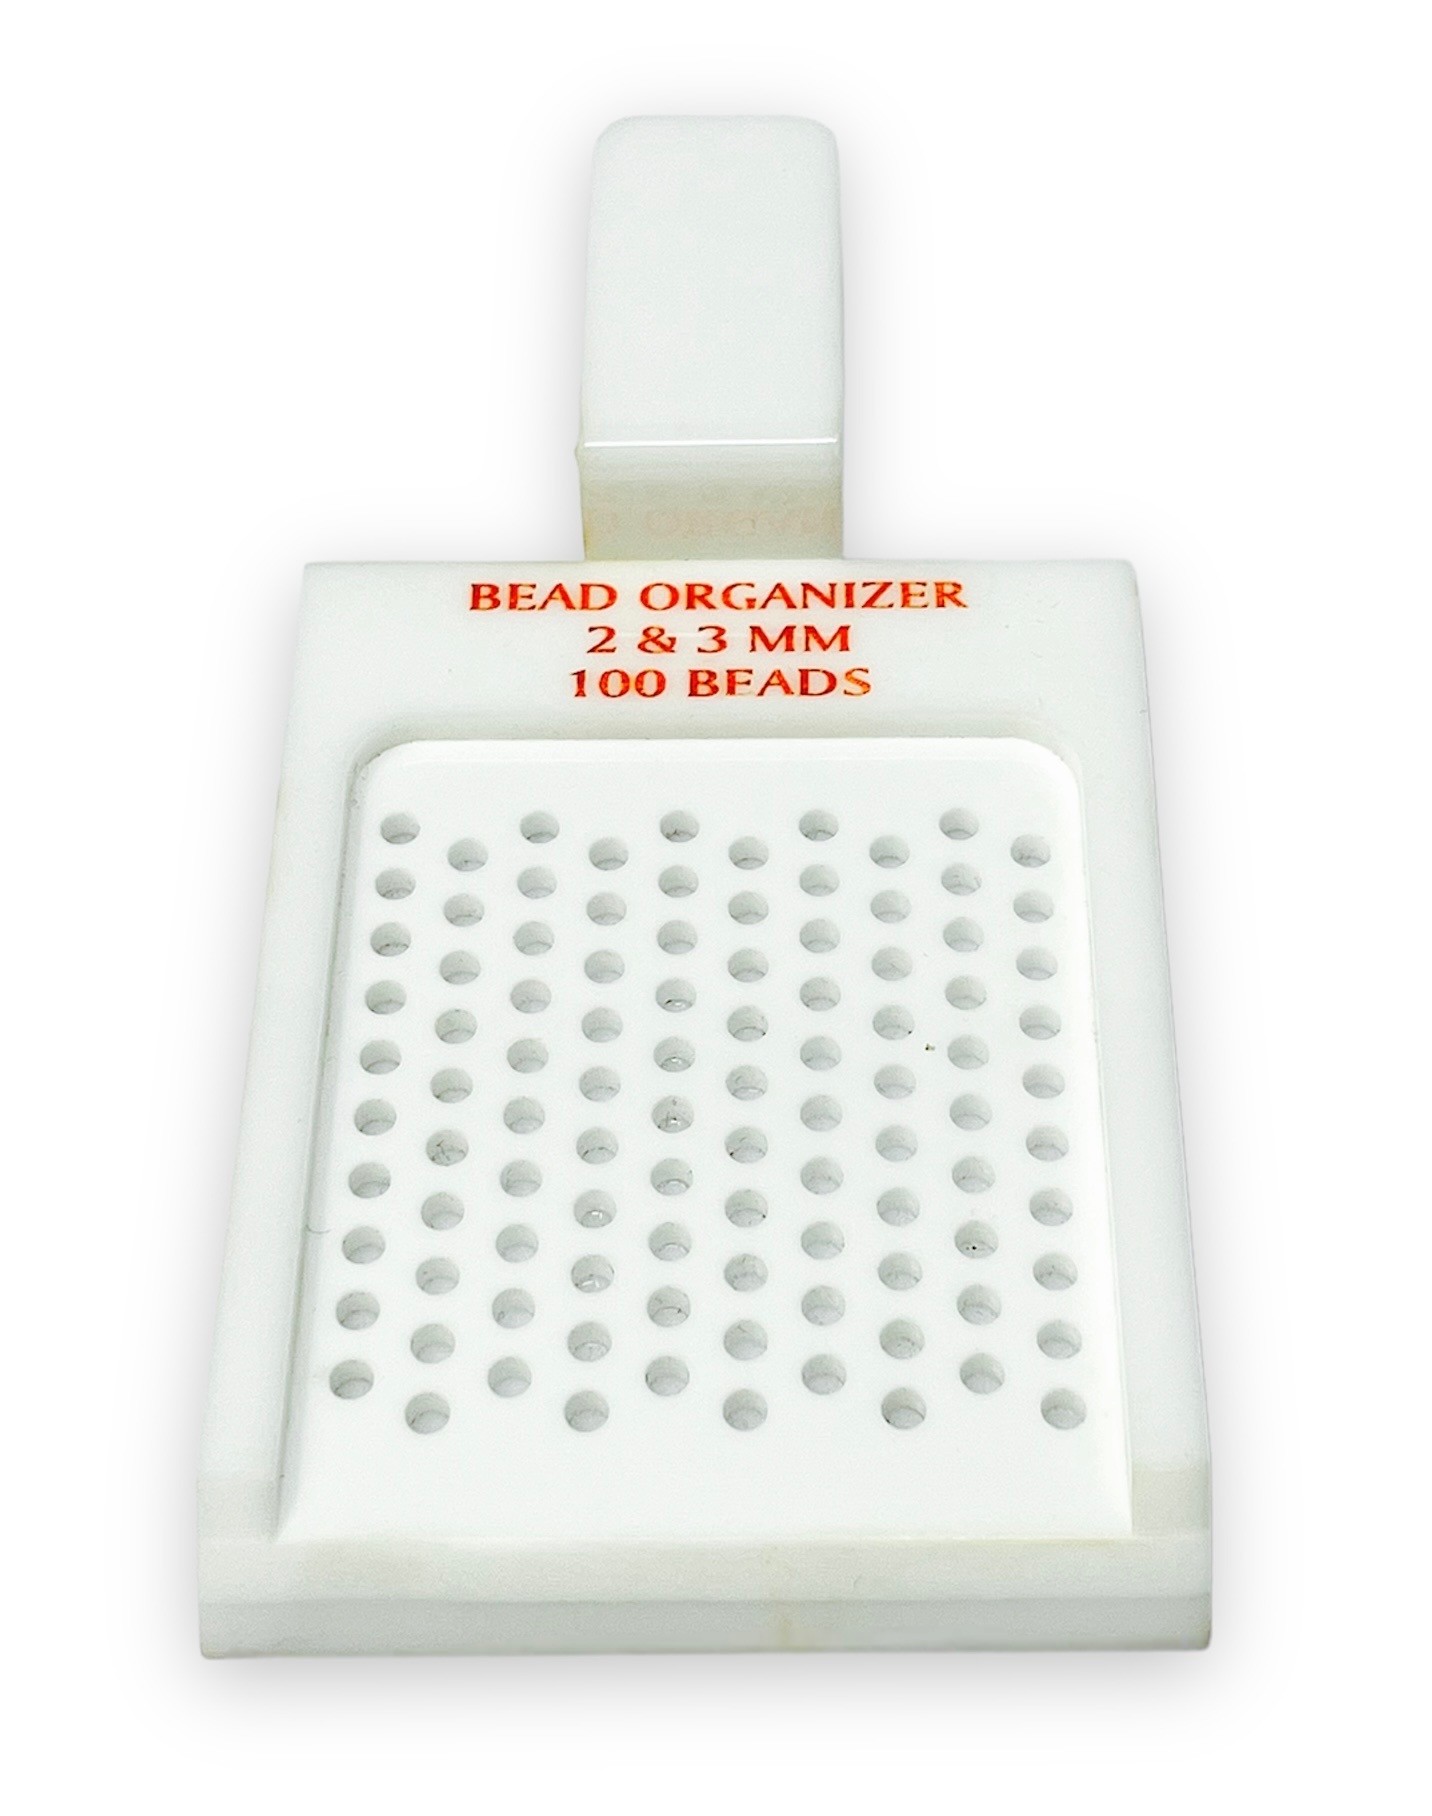 Bead Organizer Trays Acrylic (I) 2-3mm Capacity 100 Beads